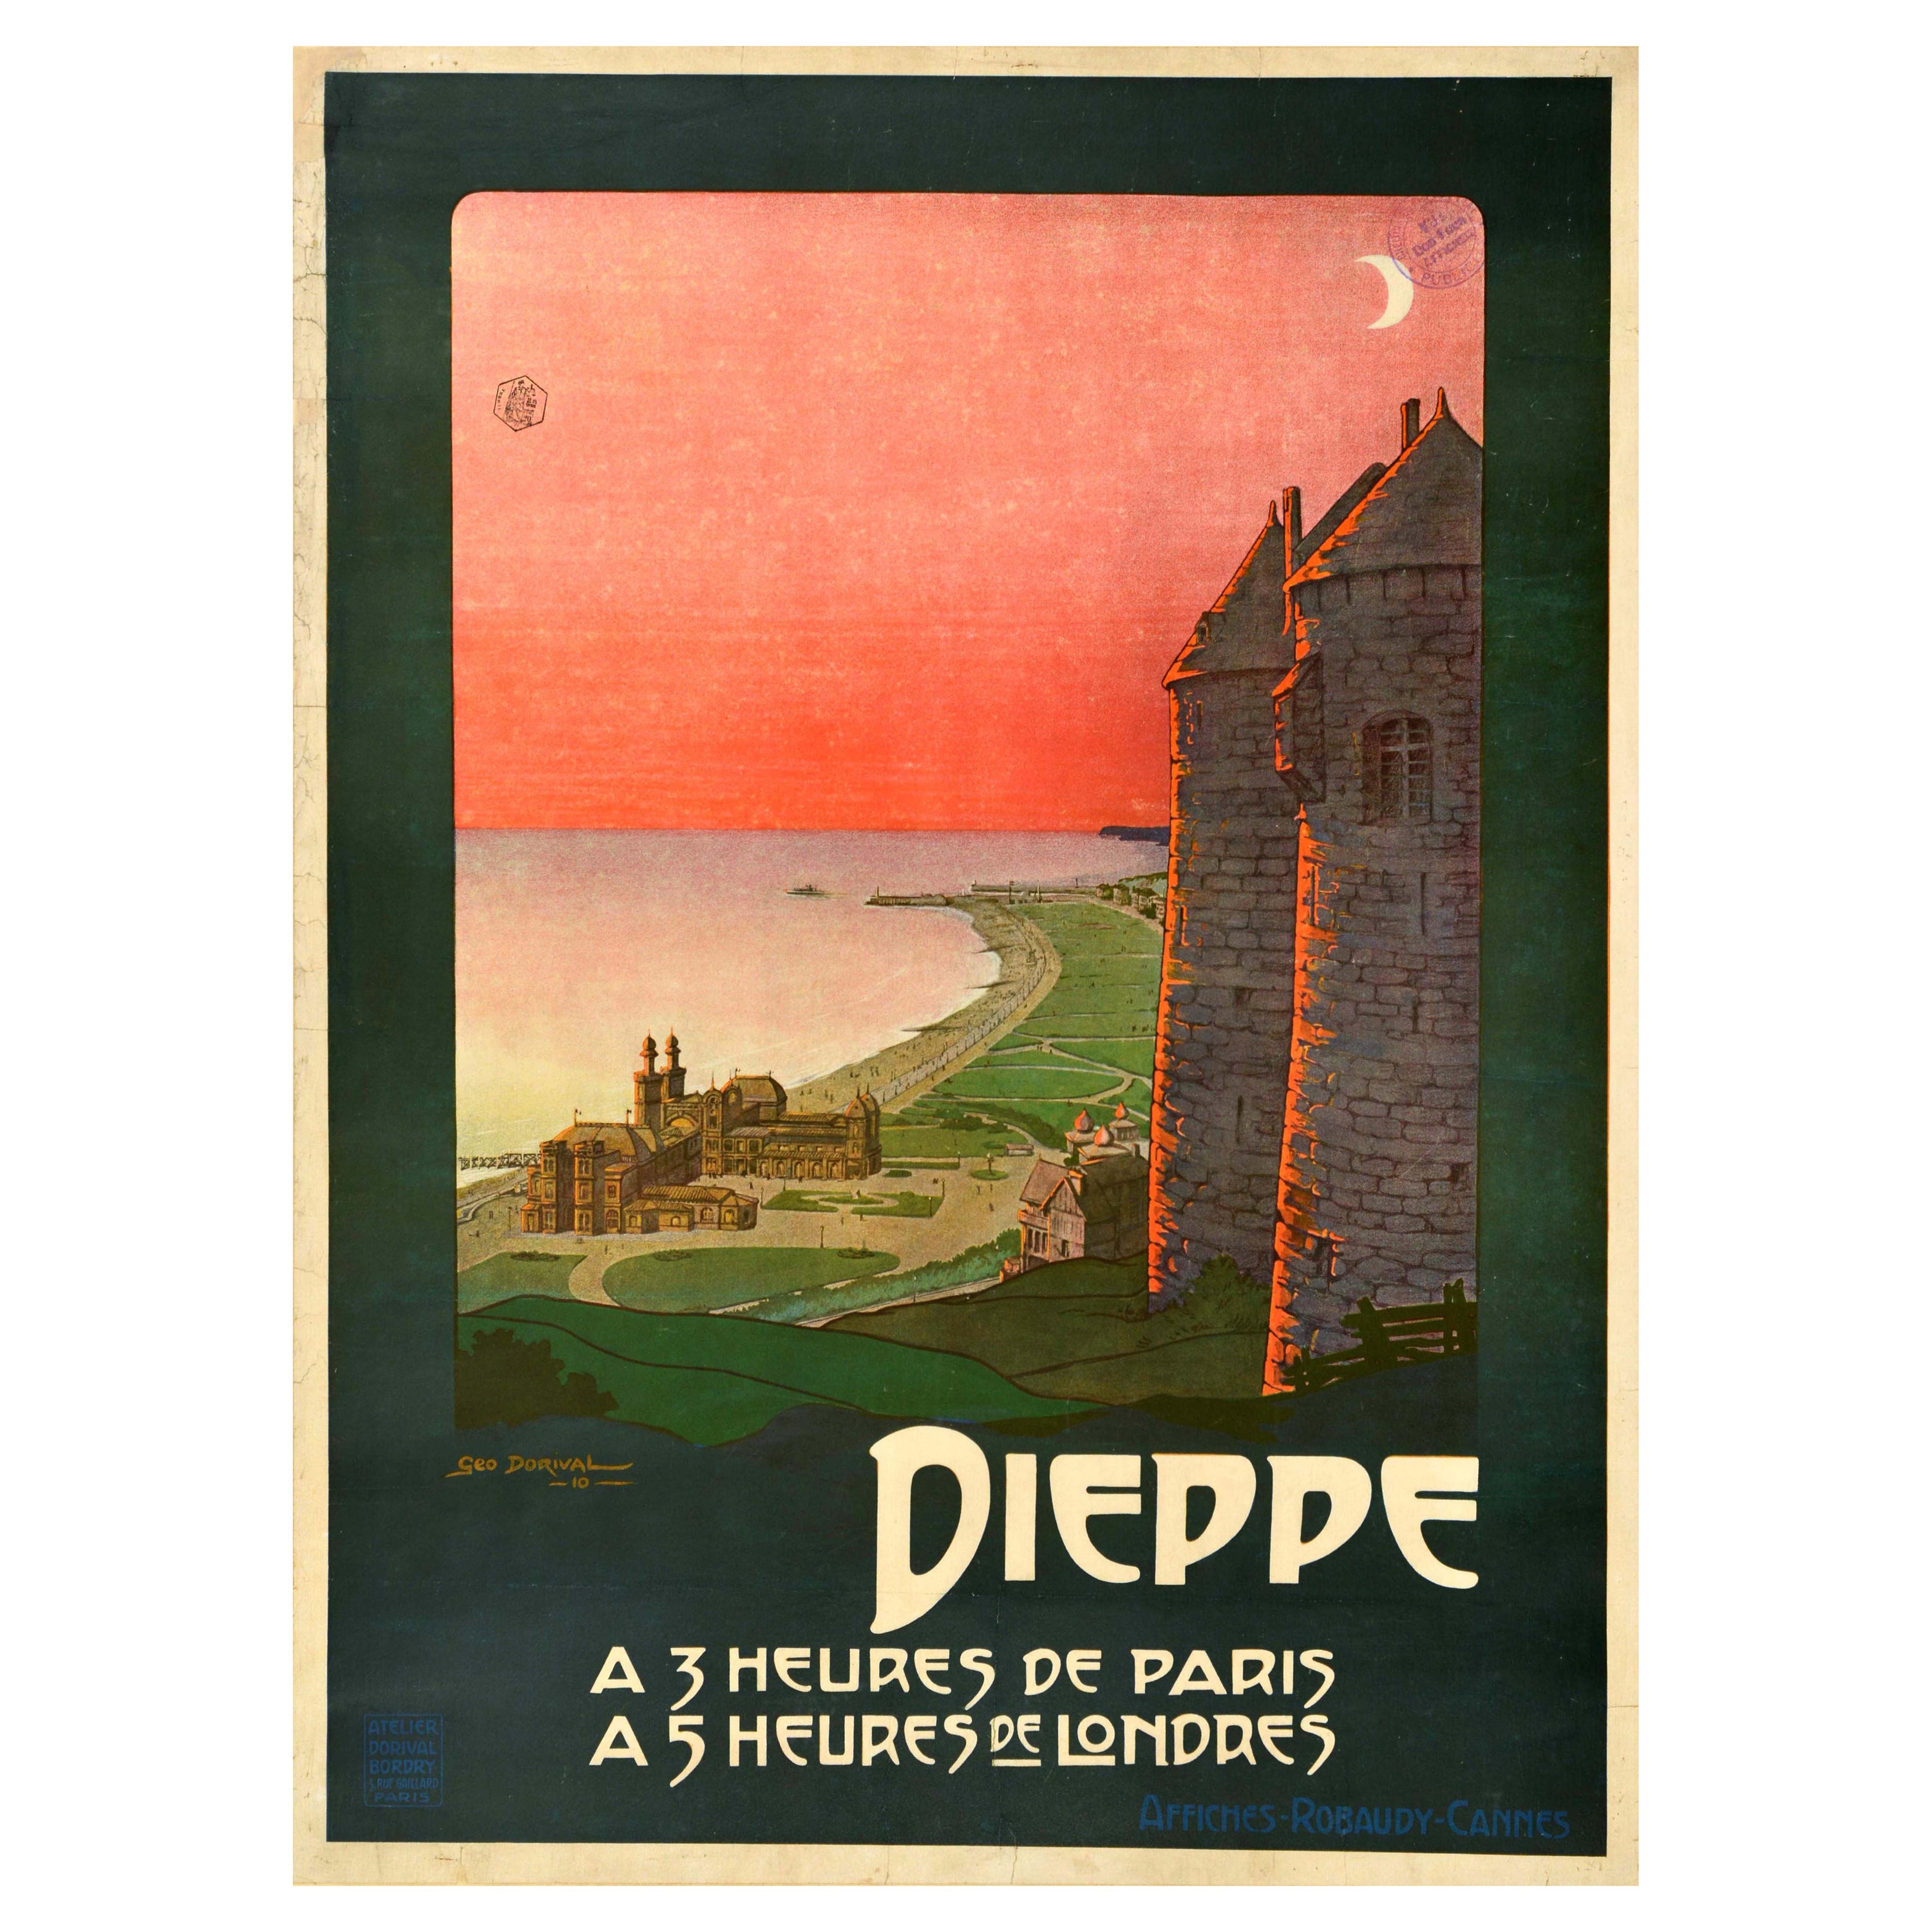 Affiche de voyage originale et ancienne de Dieppe, château de Normandie, France, Geo Dorival